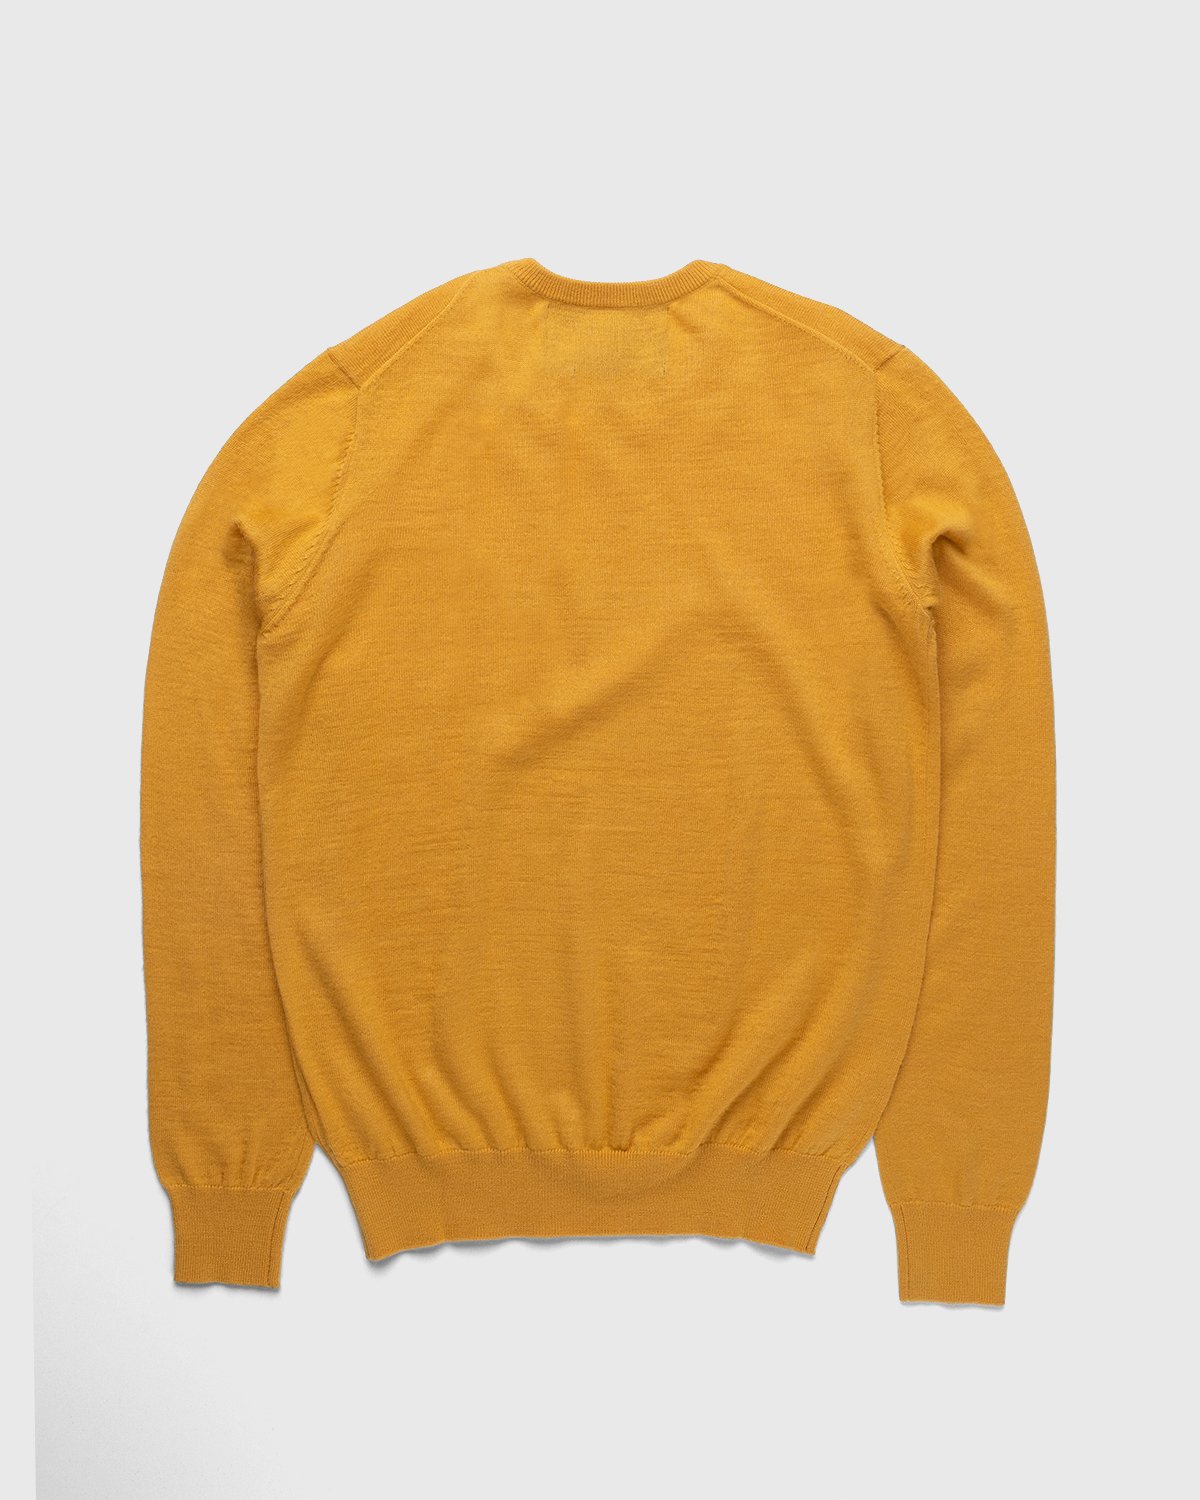 Winnie New York - Crew Sweater Mustard - Clothing - Yellow - Image 2